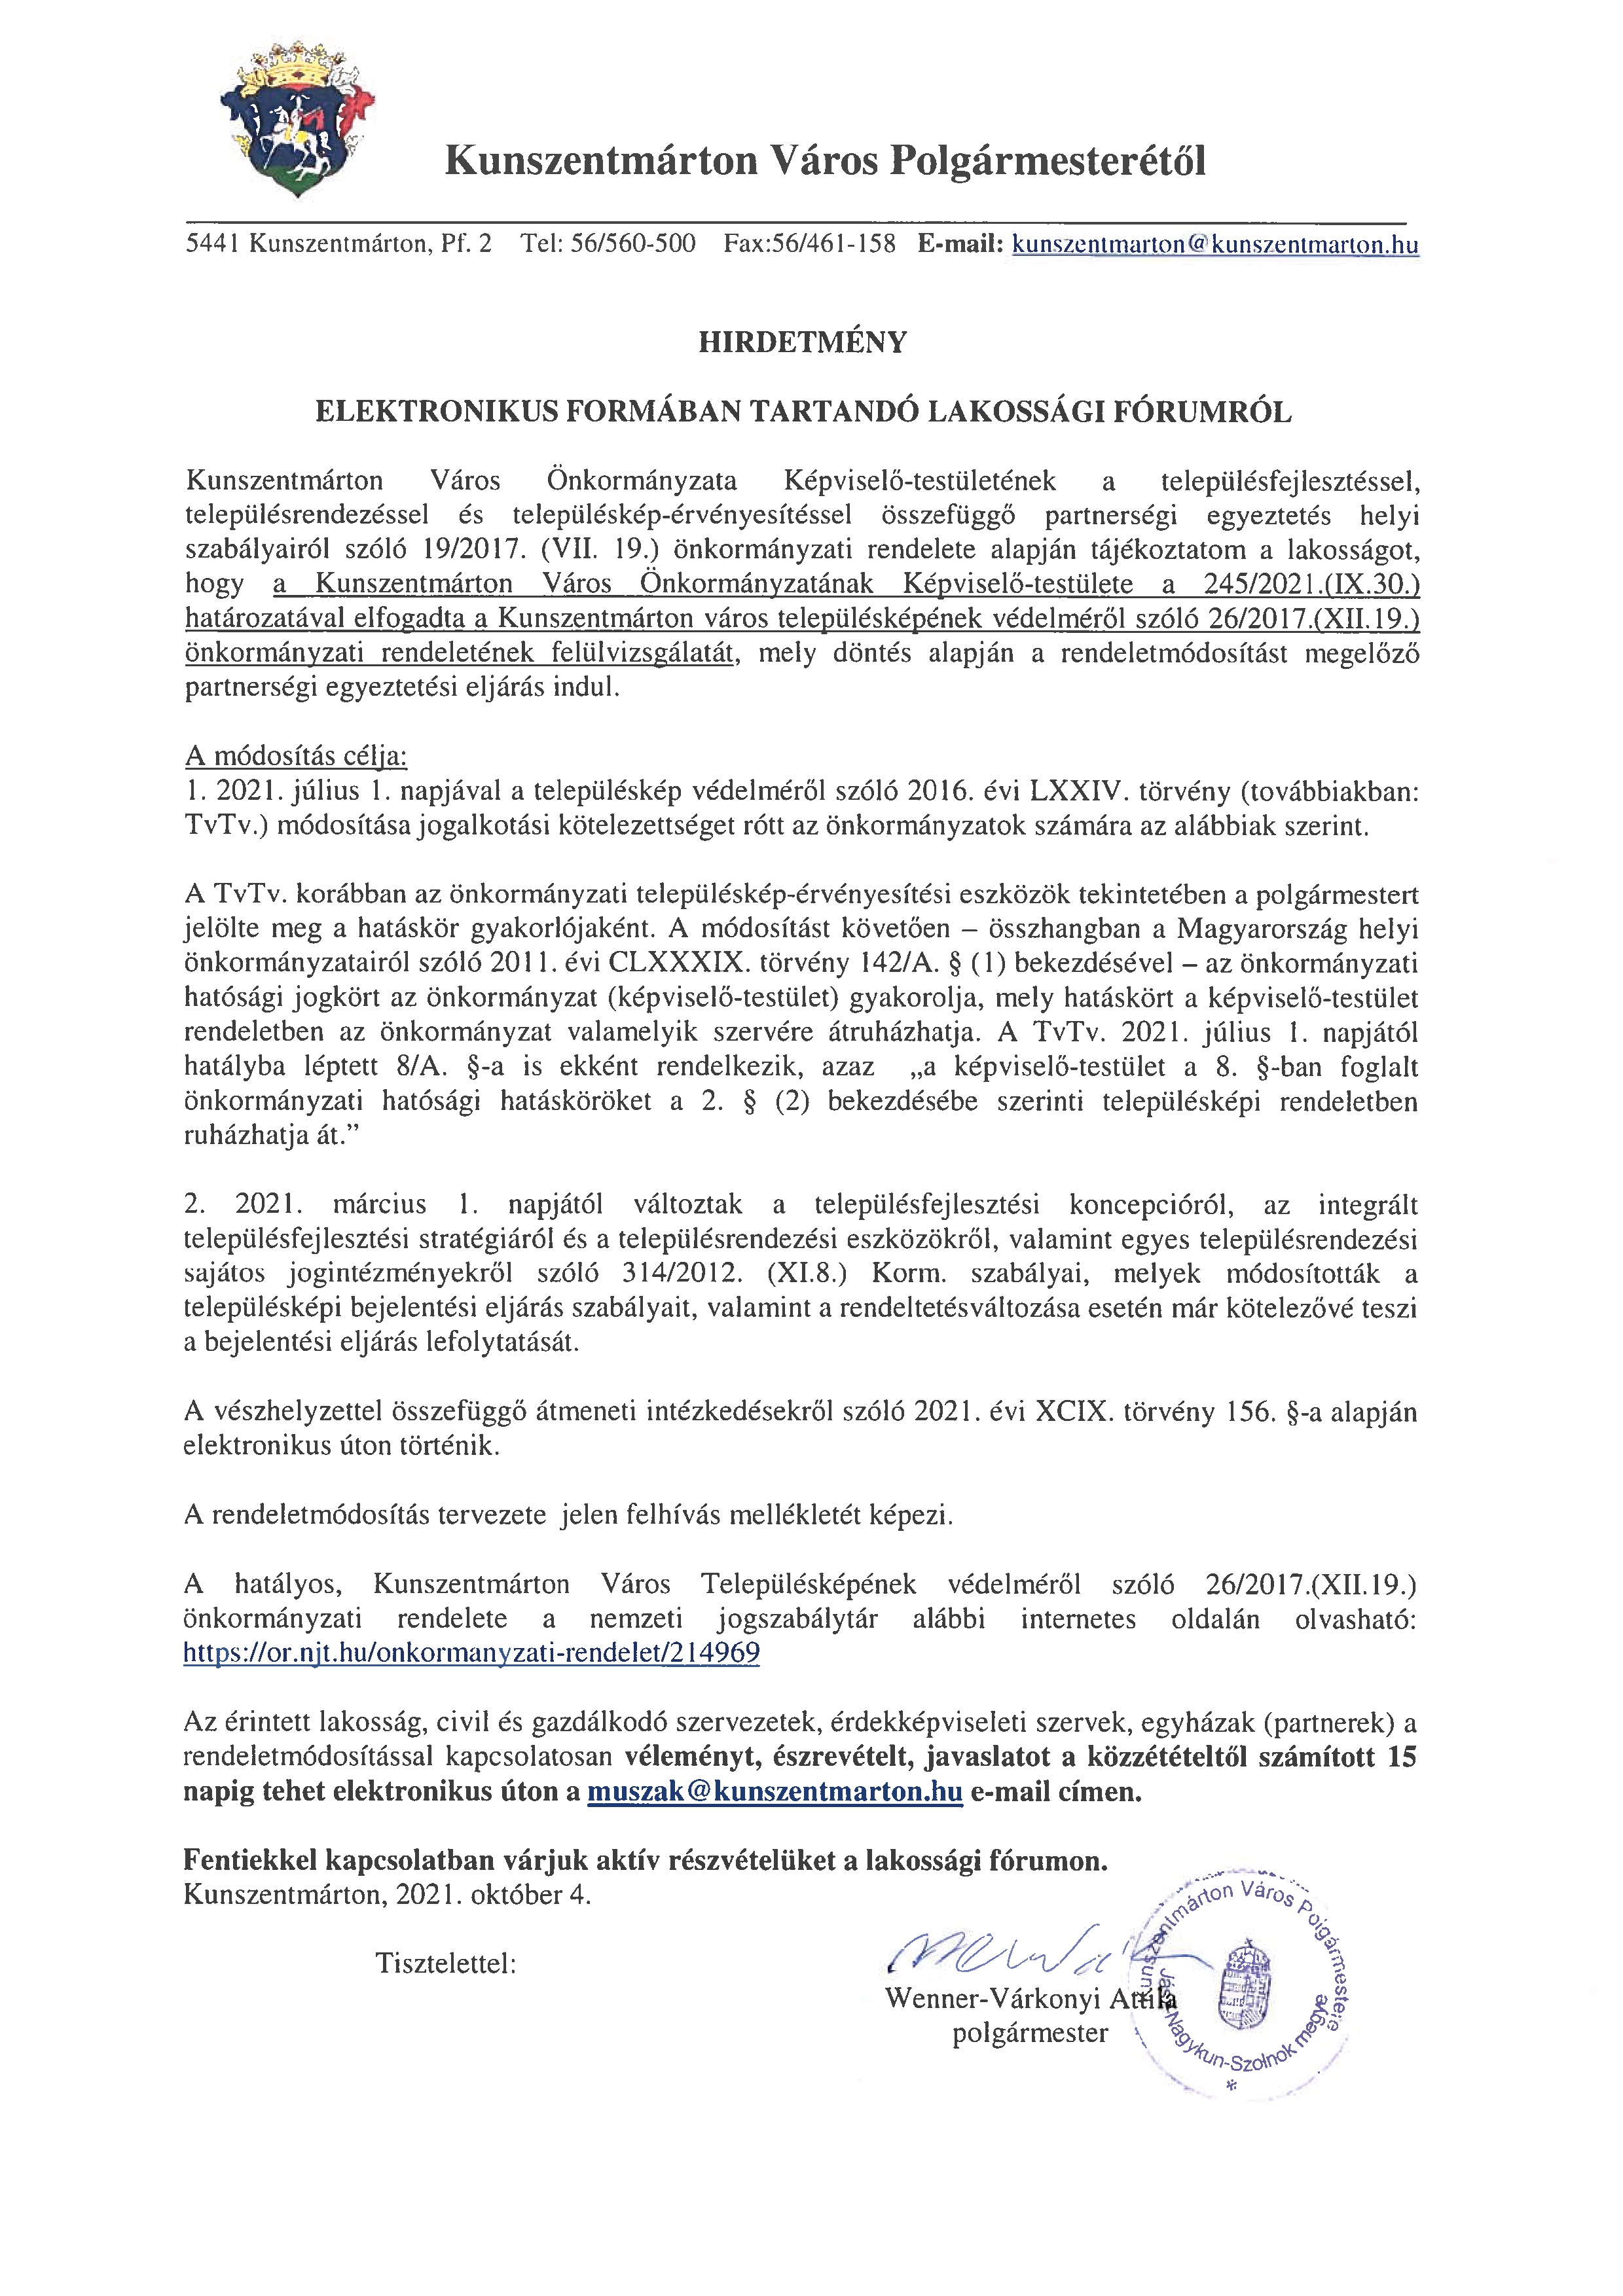  Hirdetmény ELEKTRONIKUS FORMÁBAN TARTANDÓ LAKOSSÁGI FÓRUMRÓL  Kunszentmárton város településképének védelméről szóló 26/2017.(XII.19.) önkormányzati rendeletének módosításához